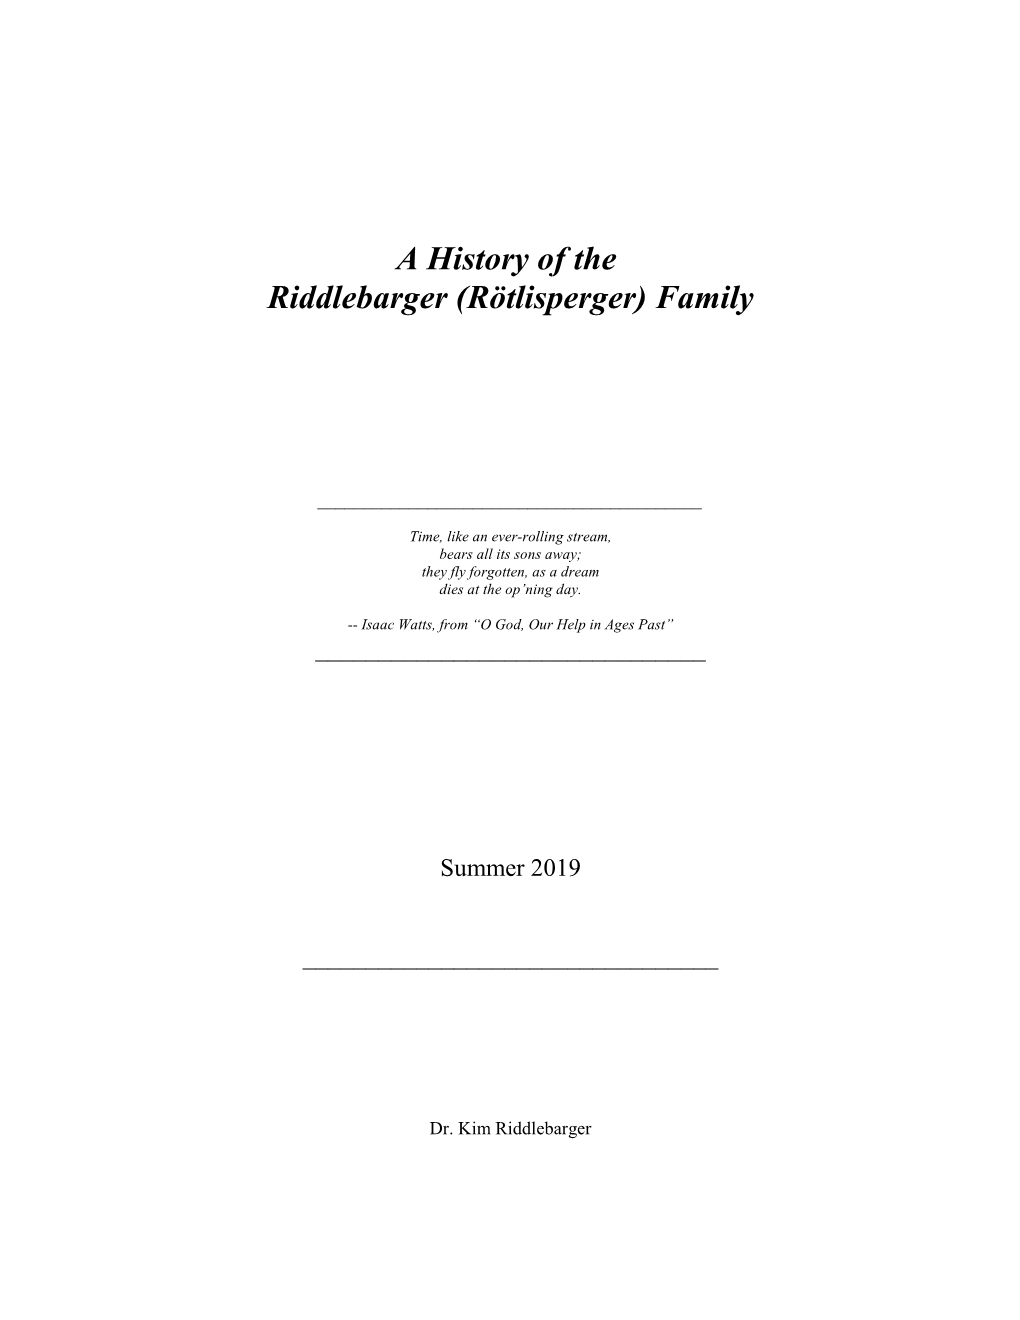 A History of the Riddlebarger (Rötlisperger) Family